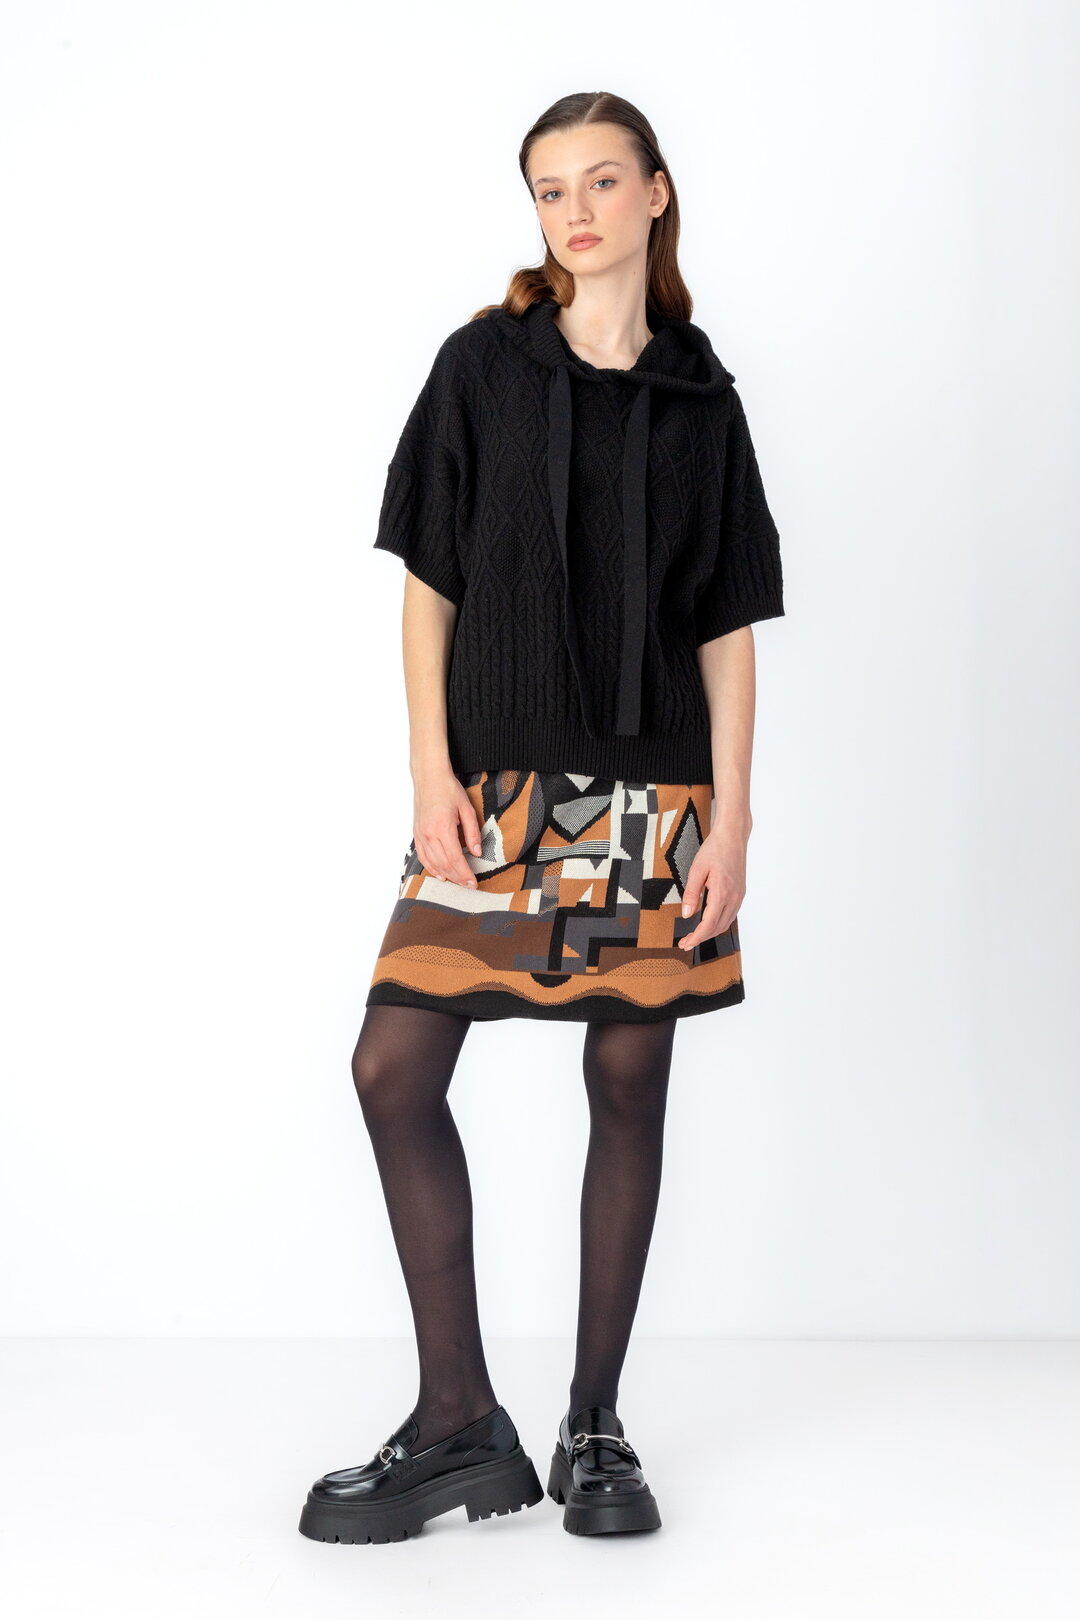 Mini Skirt, Abstract Pattern